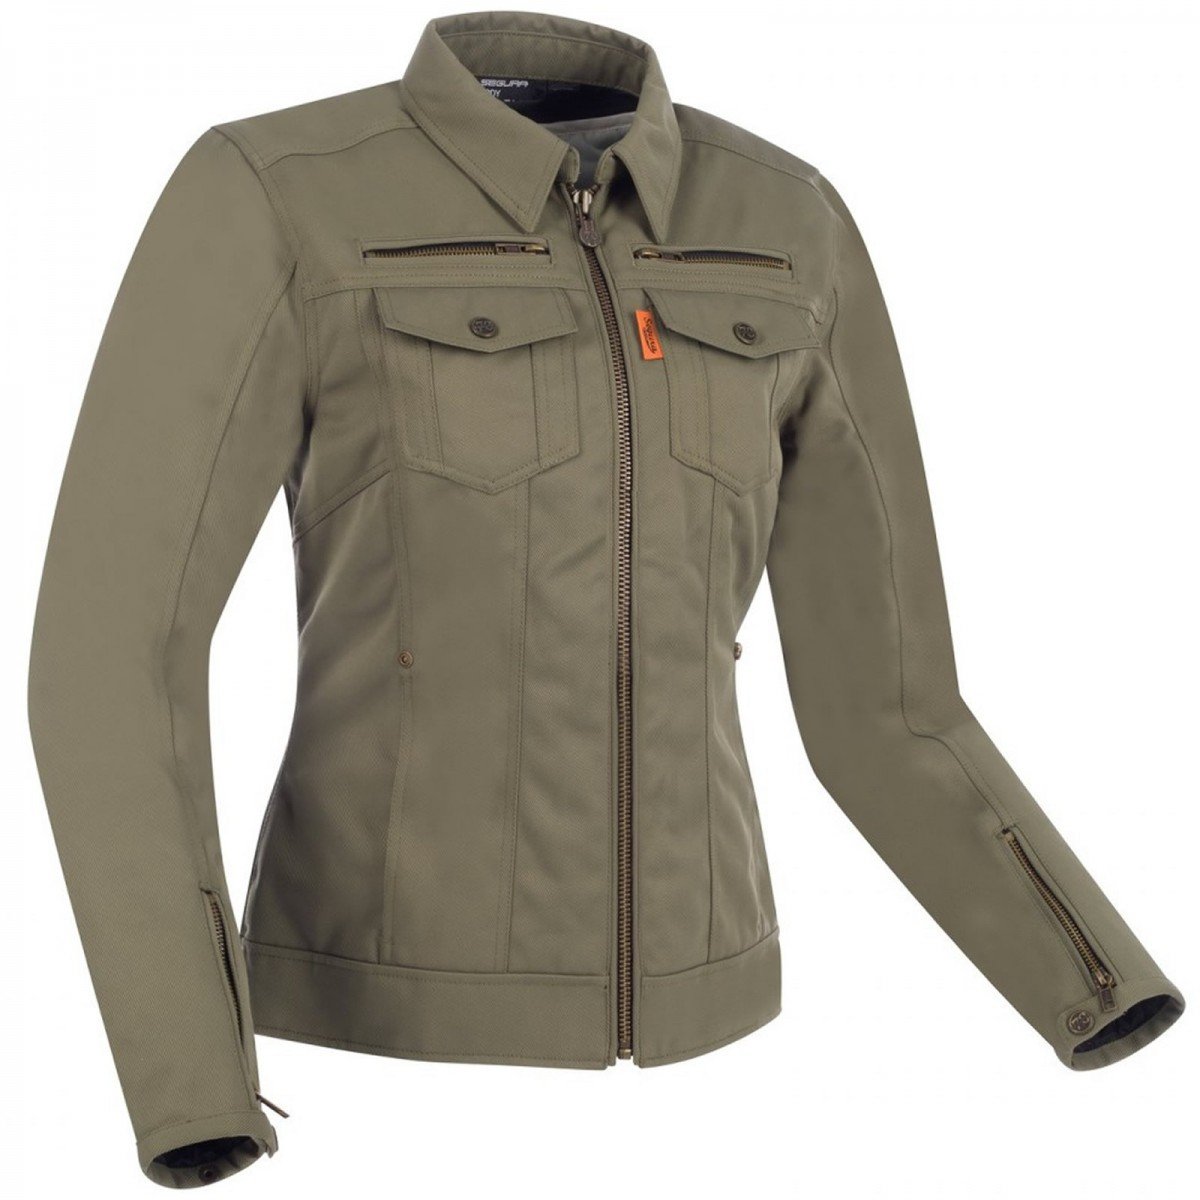 Image of Segura Lady Patrol Jacket Khaki Size T3 ID 3660815163191